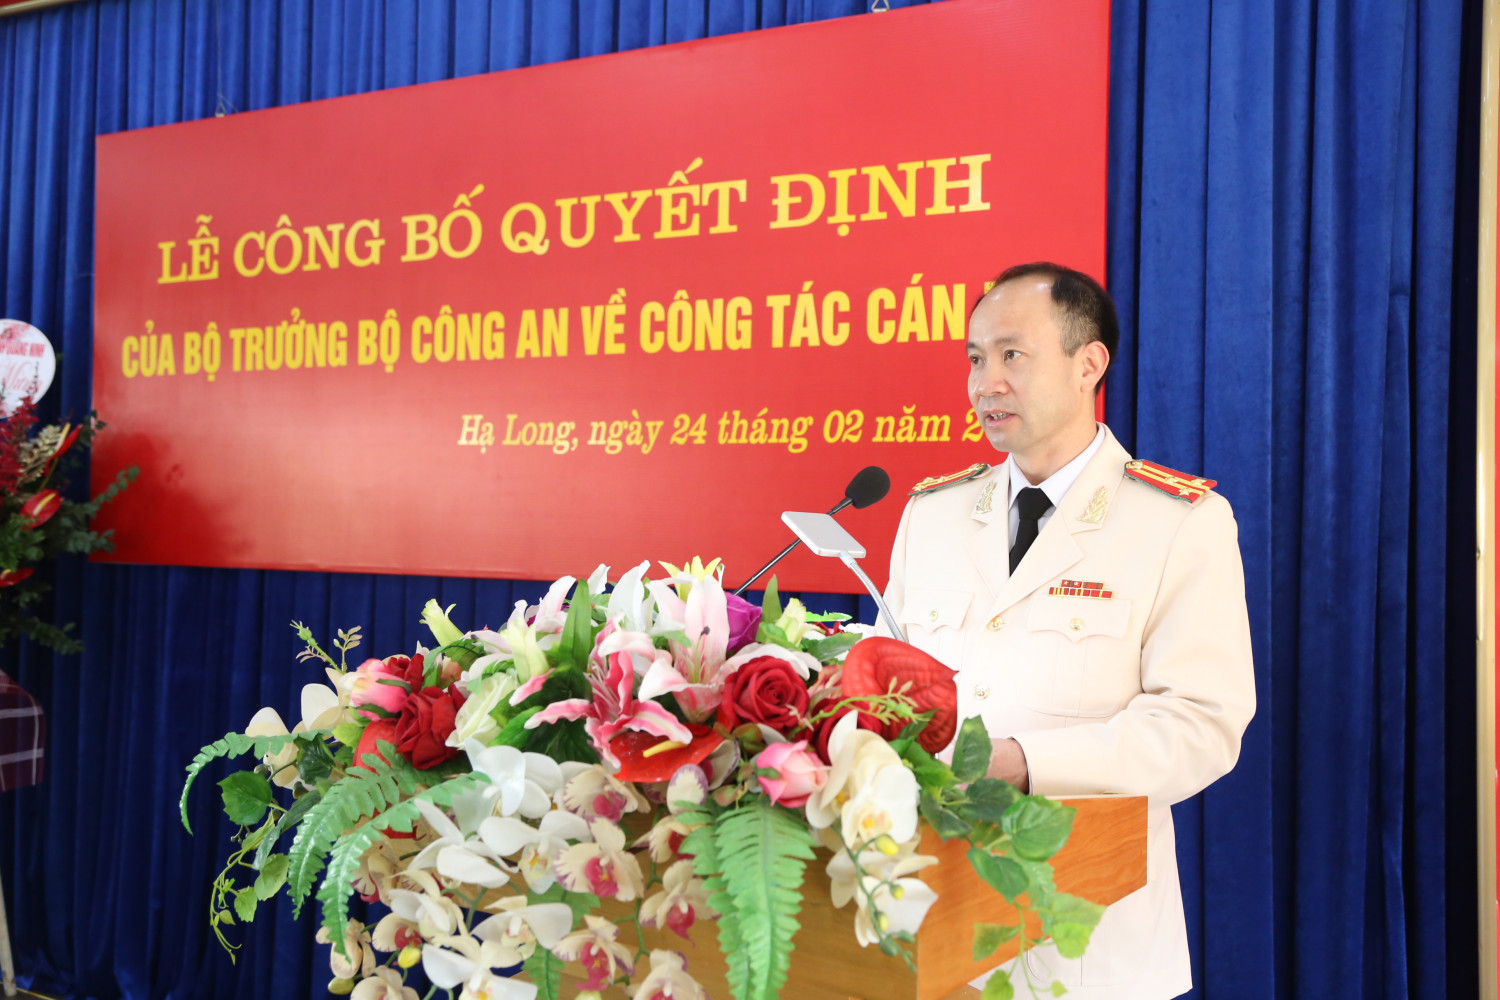 Thạc sĩ luật học 46 tuổi giữ chức Phó Giám đốc Công an tỉnh Quảng Ninh - Ảnh 2.